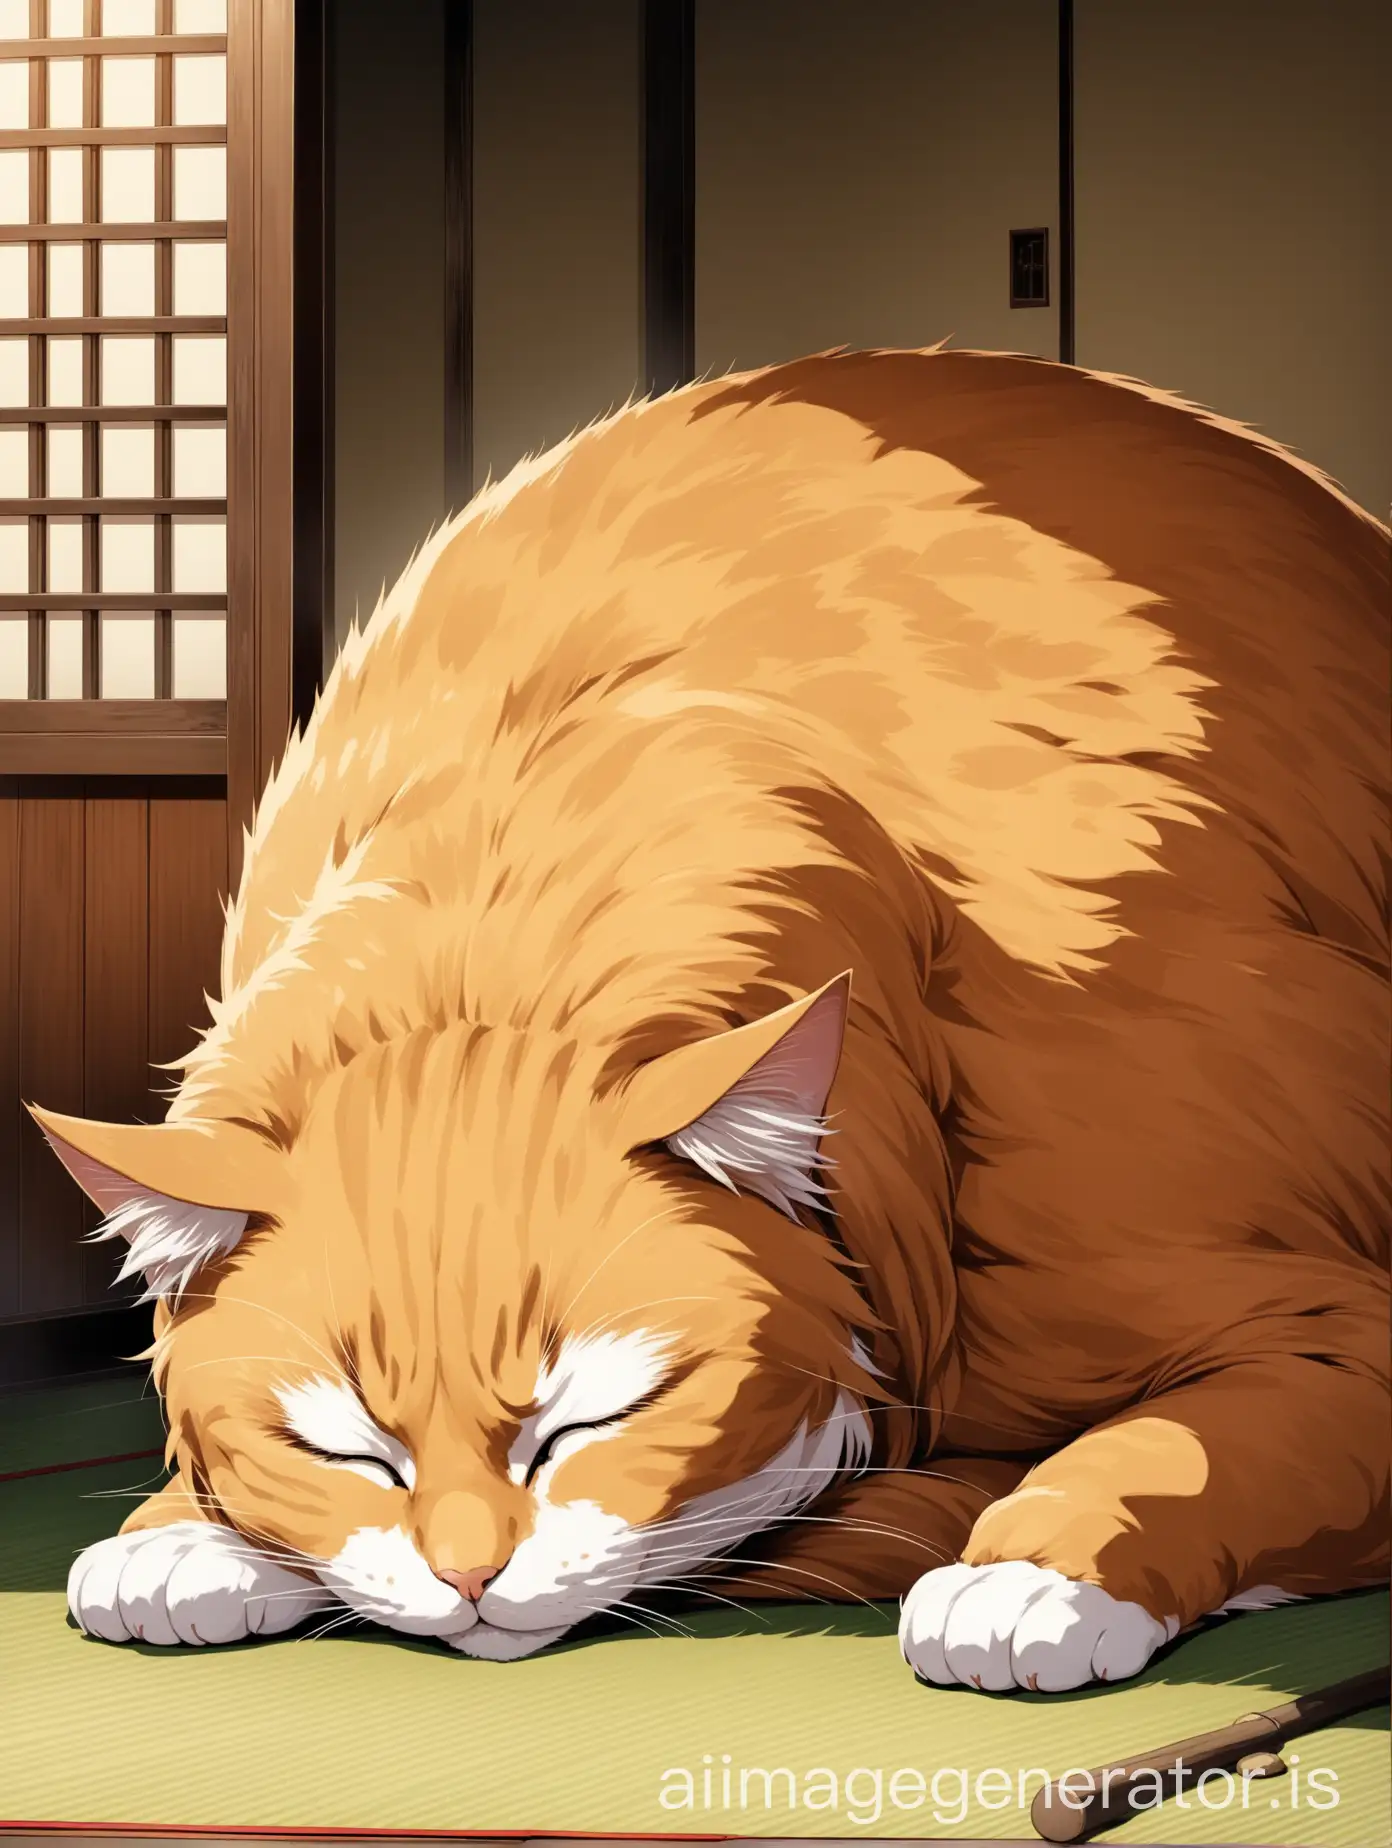 very huge cat sleep in the old Japanese room